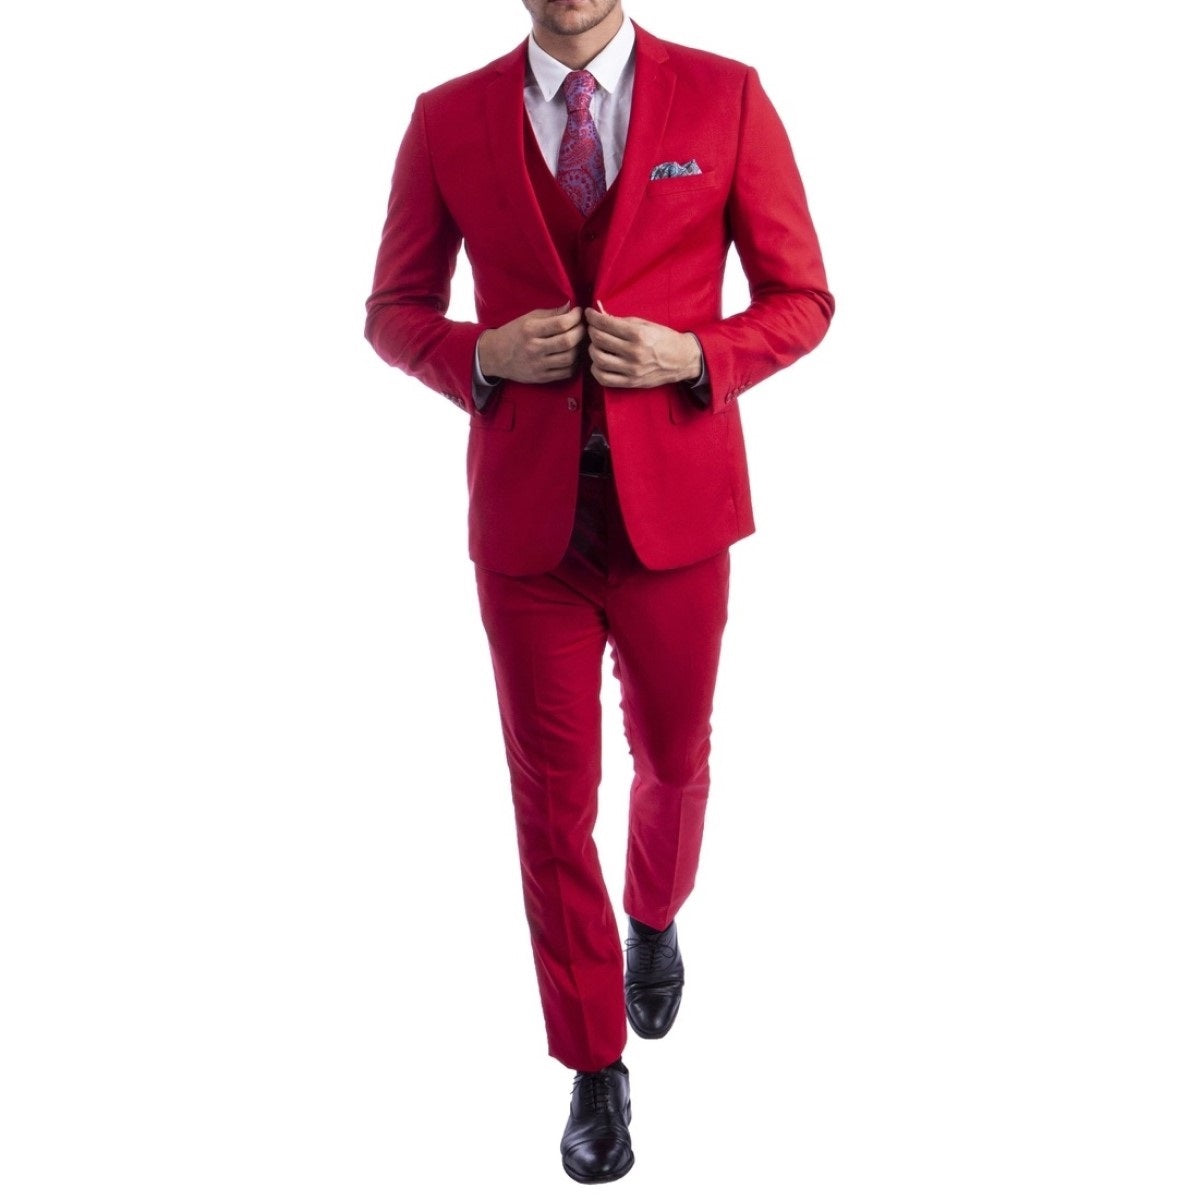 Traje Formal para Hombre TA-M282SK-10 Red - Formal Suit for Men